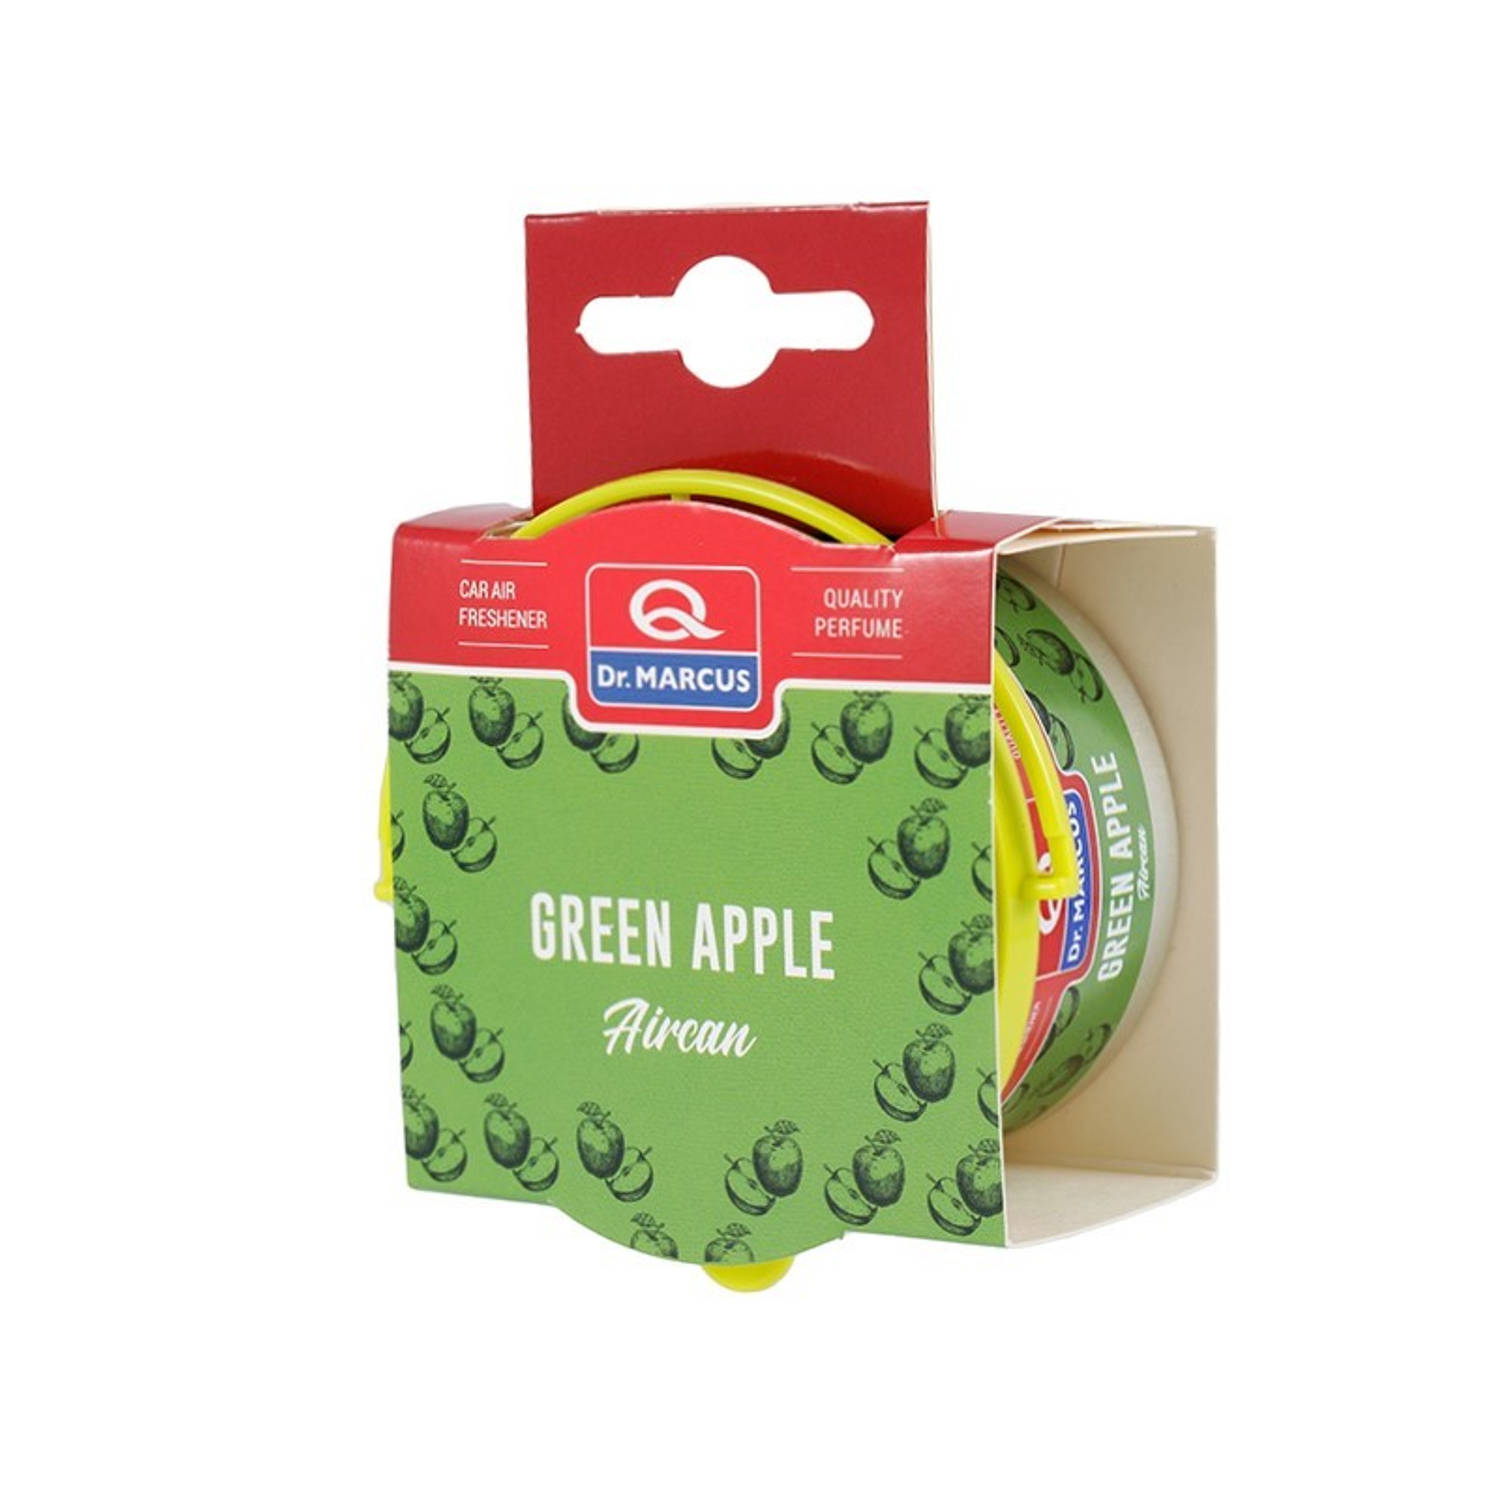 Dr. Marcus Aircan Green Apple luchtverfrisser met neutrafresh technologie - Autogeurtje voor in de auto, thuis of kantoor - Tot 60 dagen geurverspreiding 40 gram